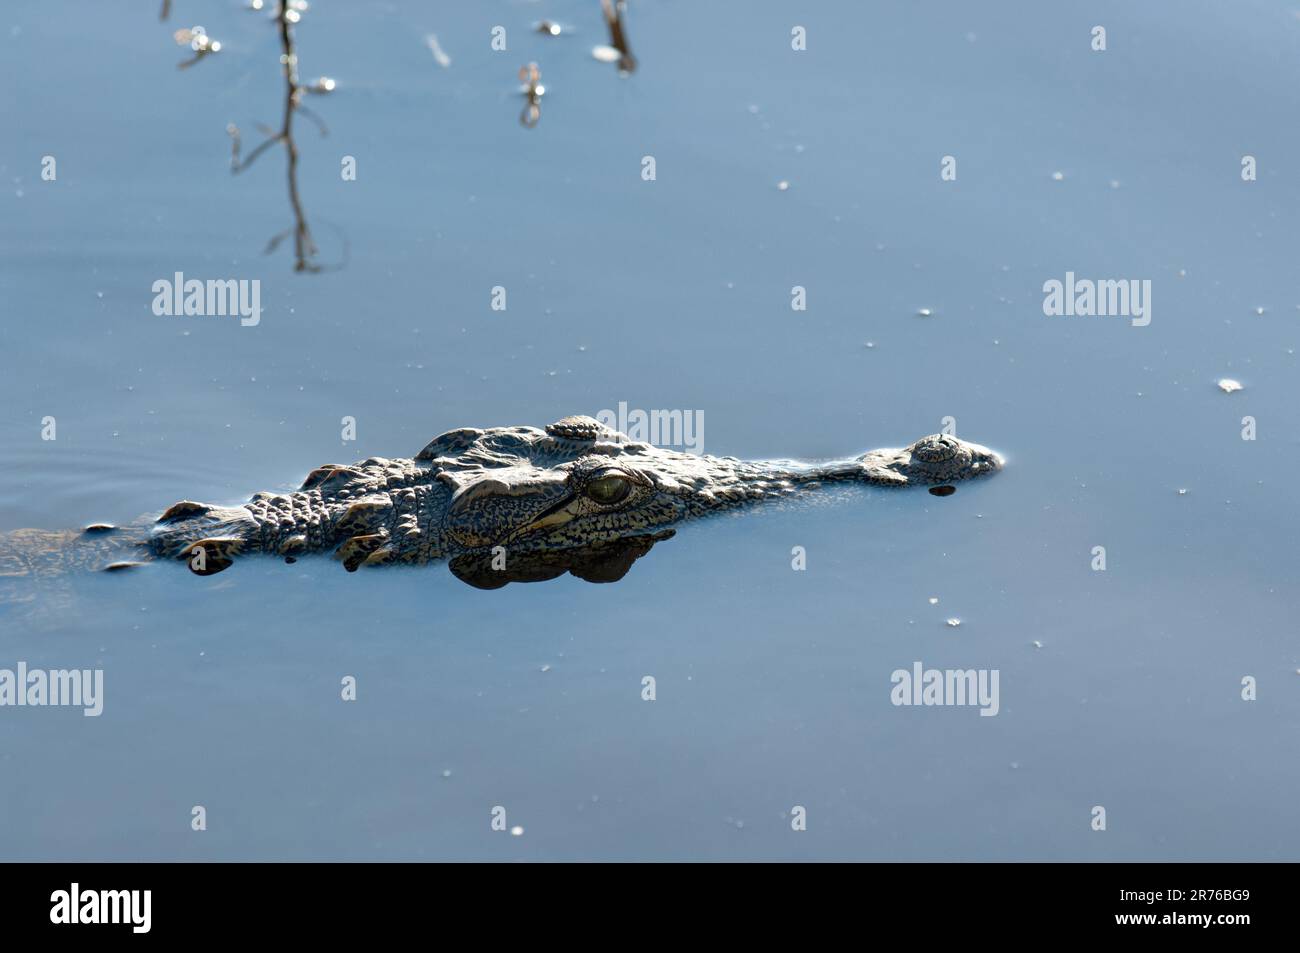 Le crocodile africain (Nil) adopte une position classique d'embuscade, silencieux et toujours avec juste les yeux et les narines au-dessus de l'eau. Rivière Chobe, Botswana Banque D'Images